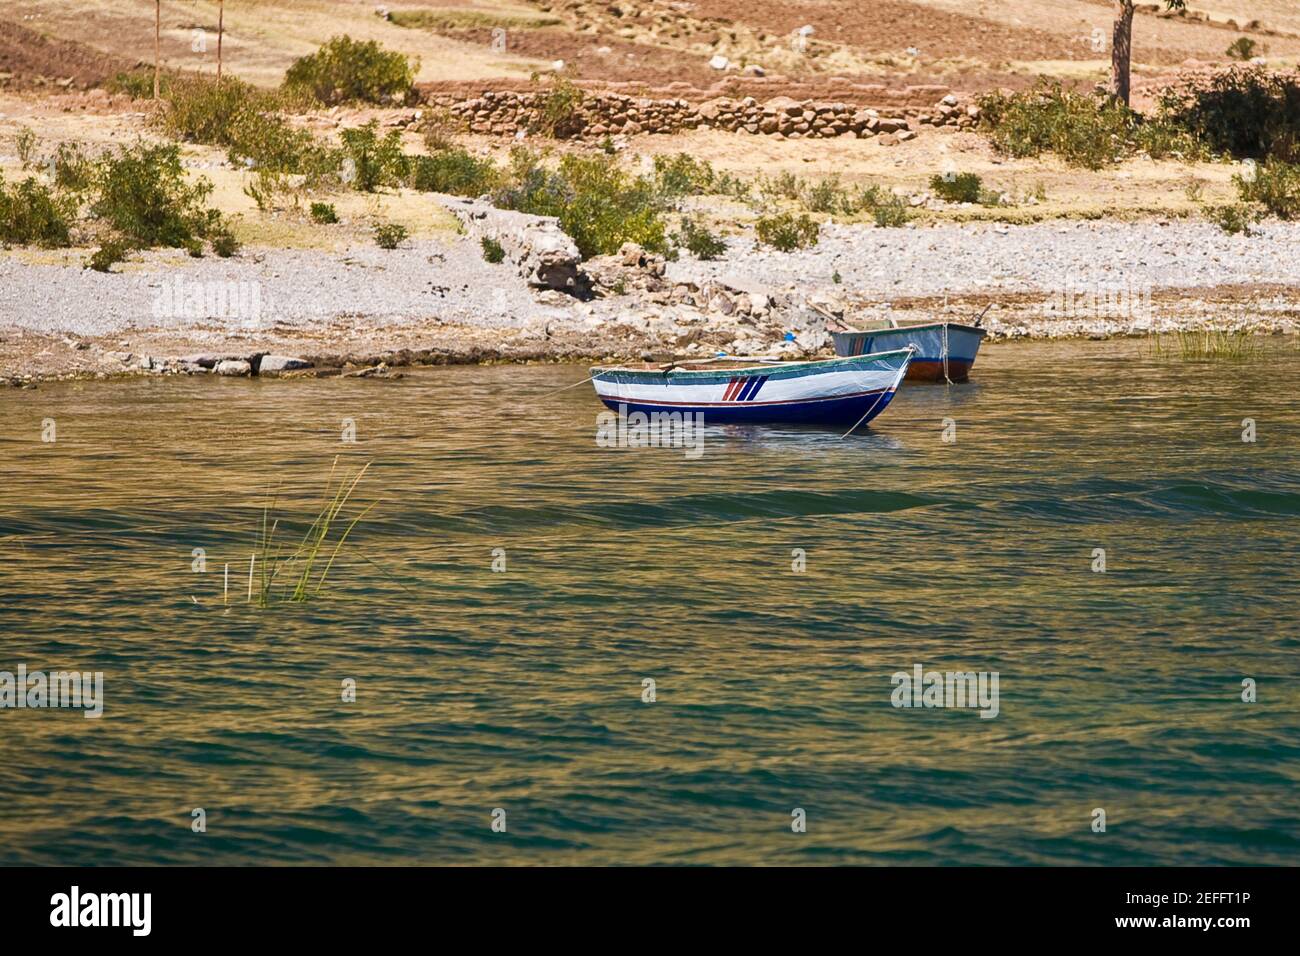 Boats in a lake, Lake Titicaca, Puno, Puno Region, Puno Province, Peru Stock Photo